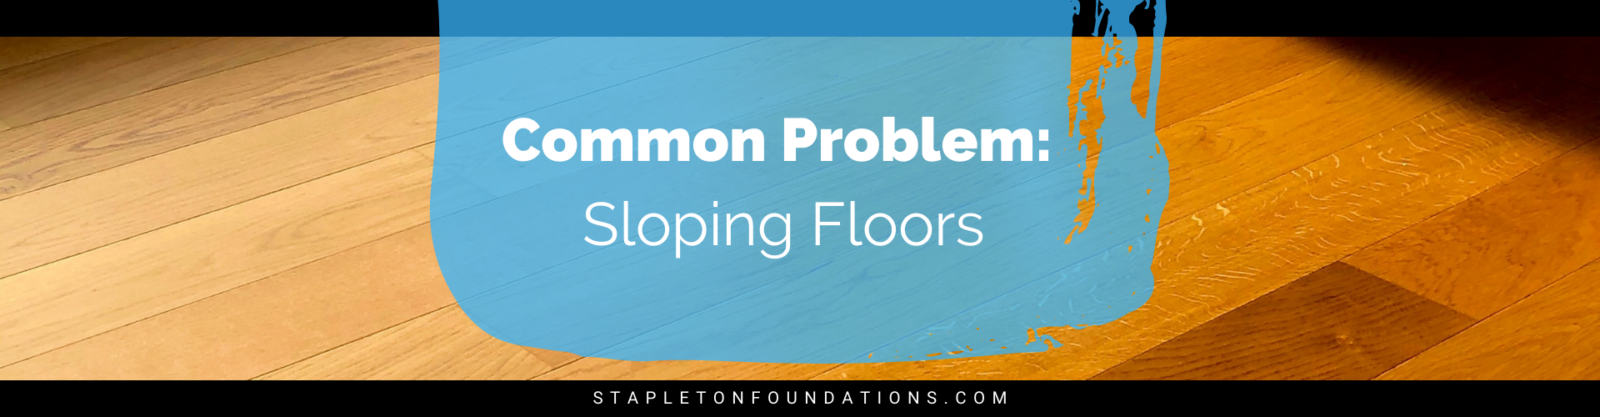 sloping floors